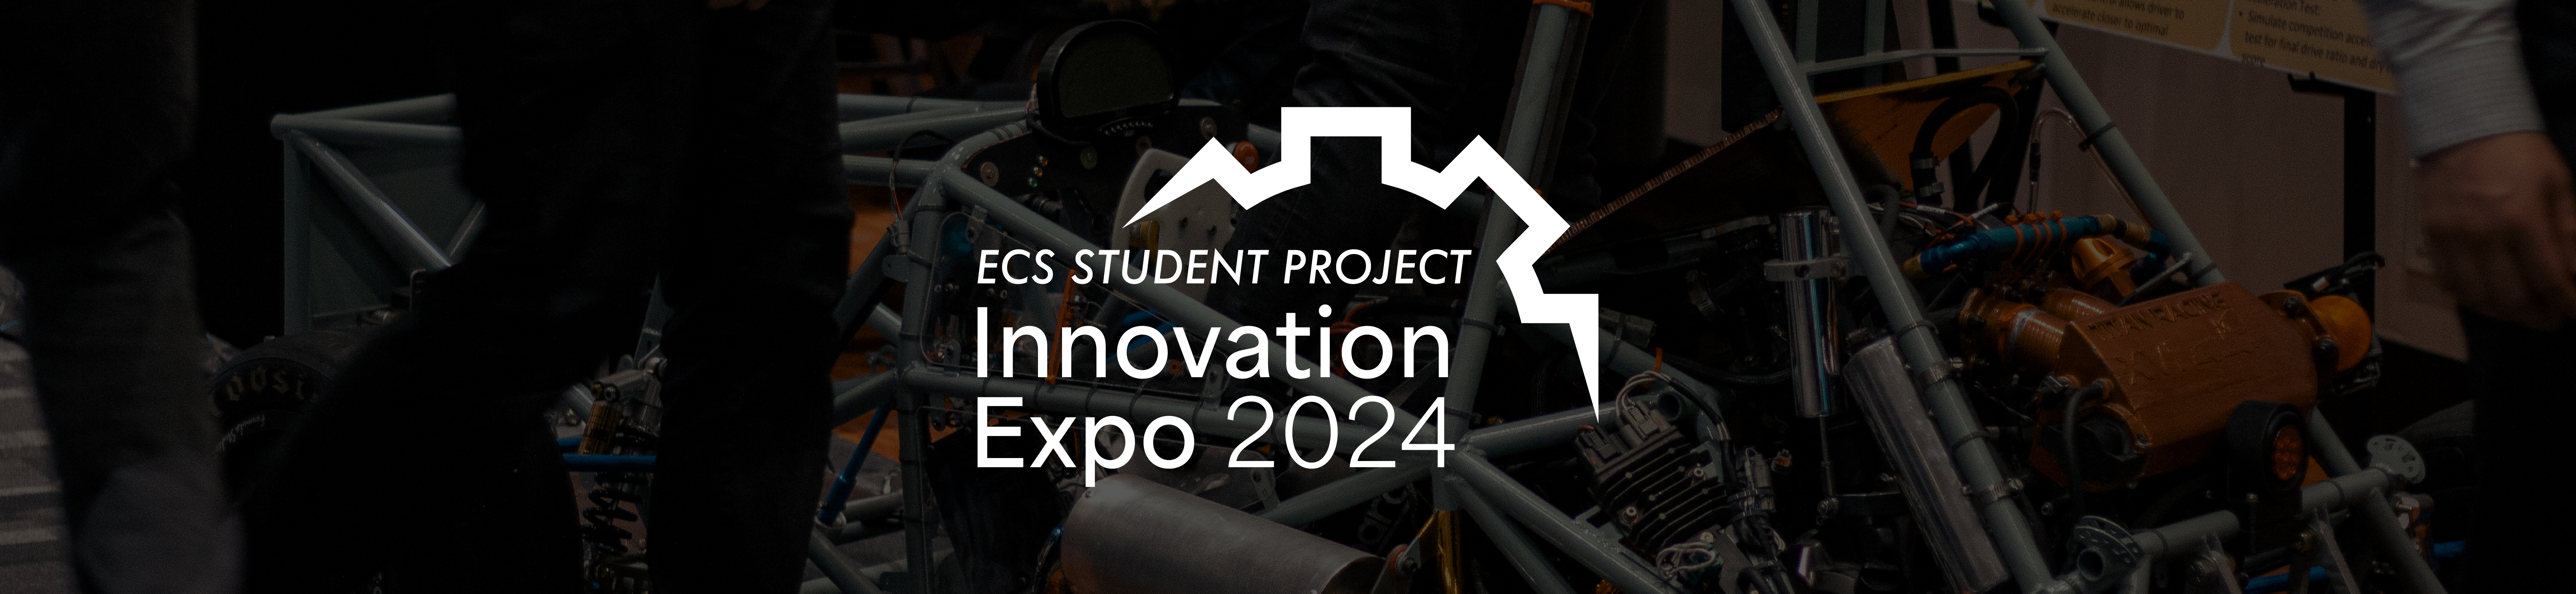 2024 innovation expo